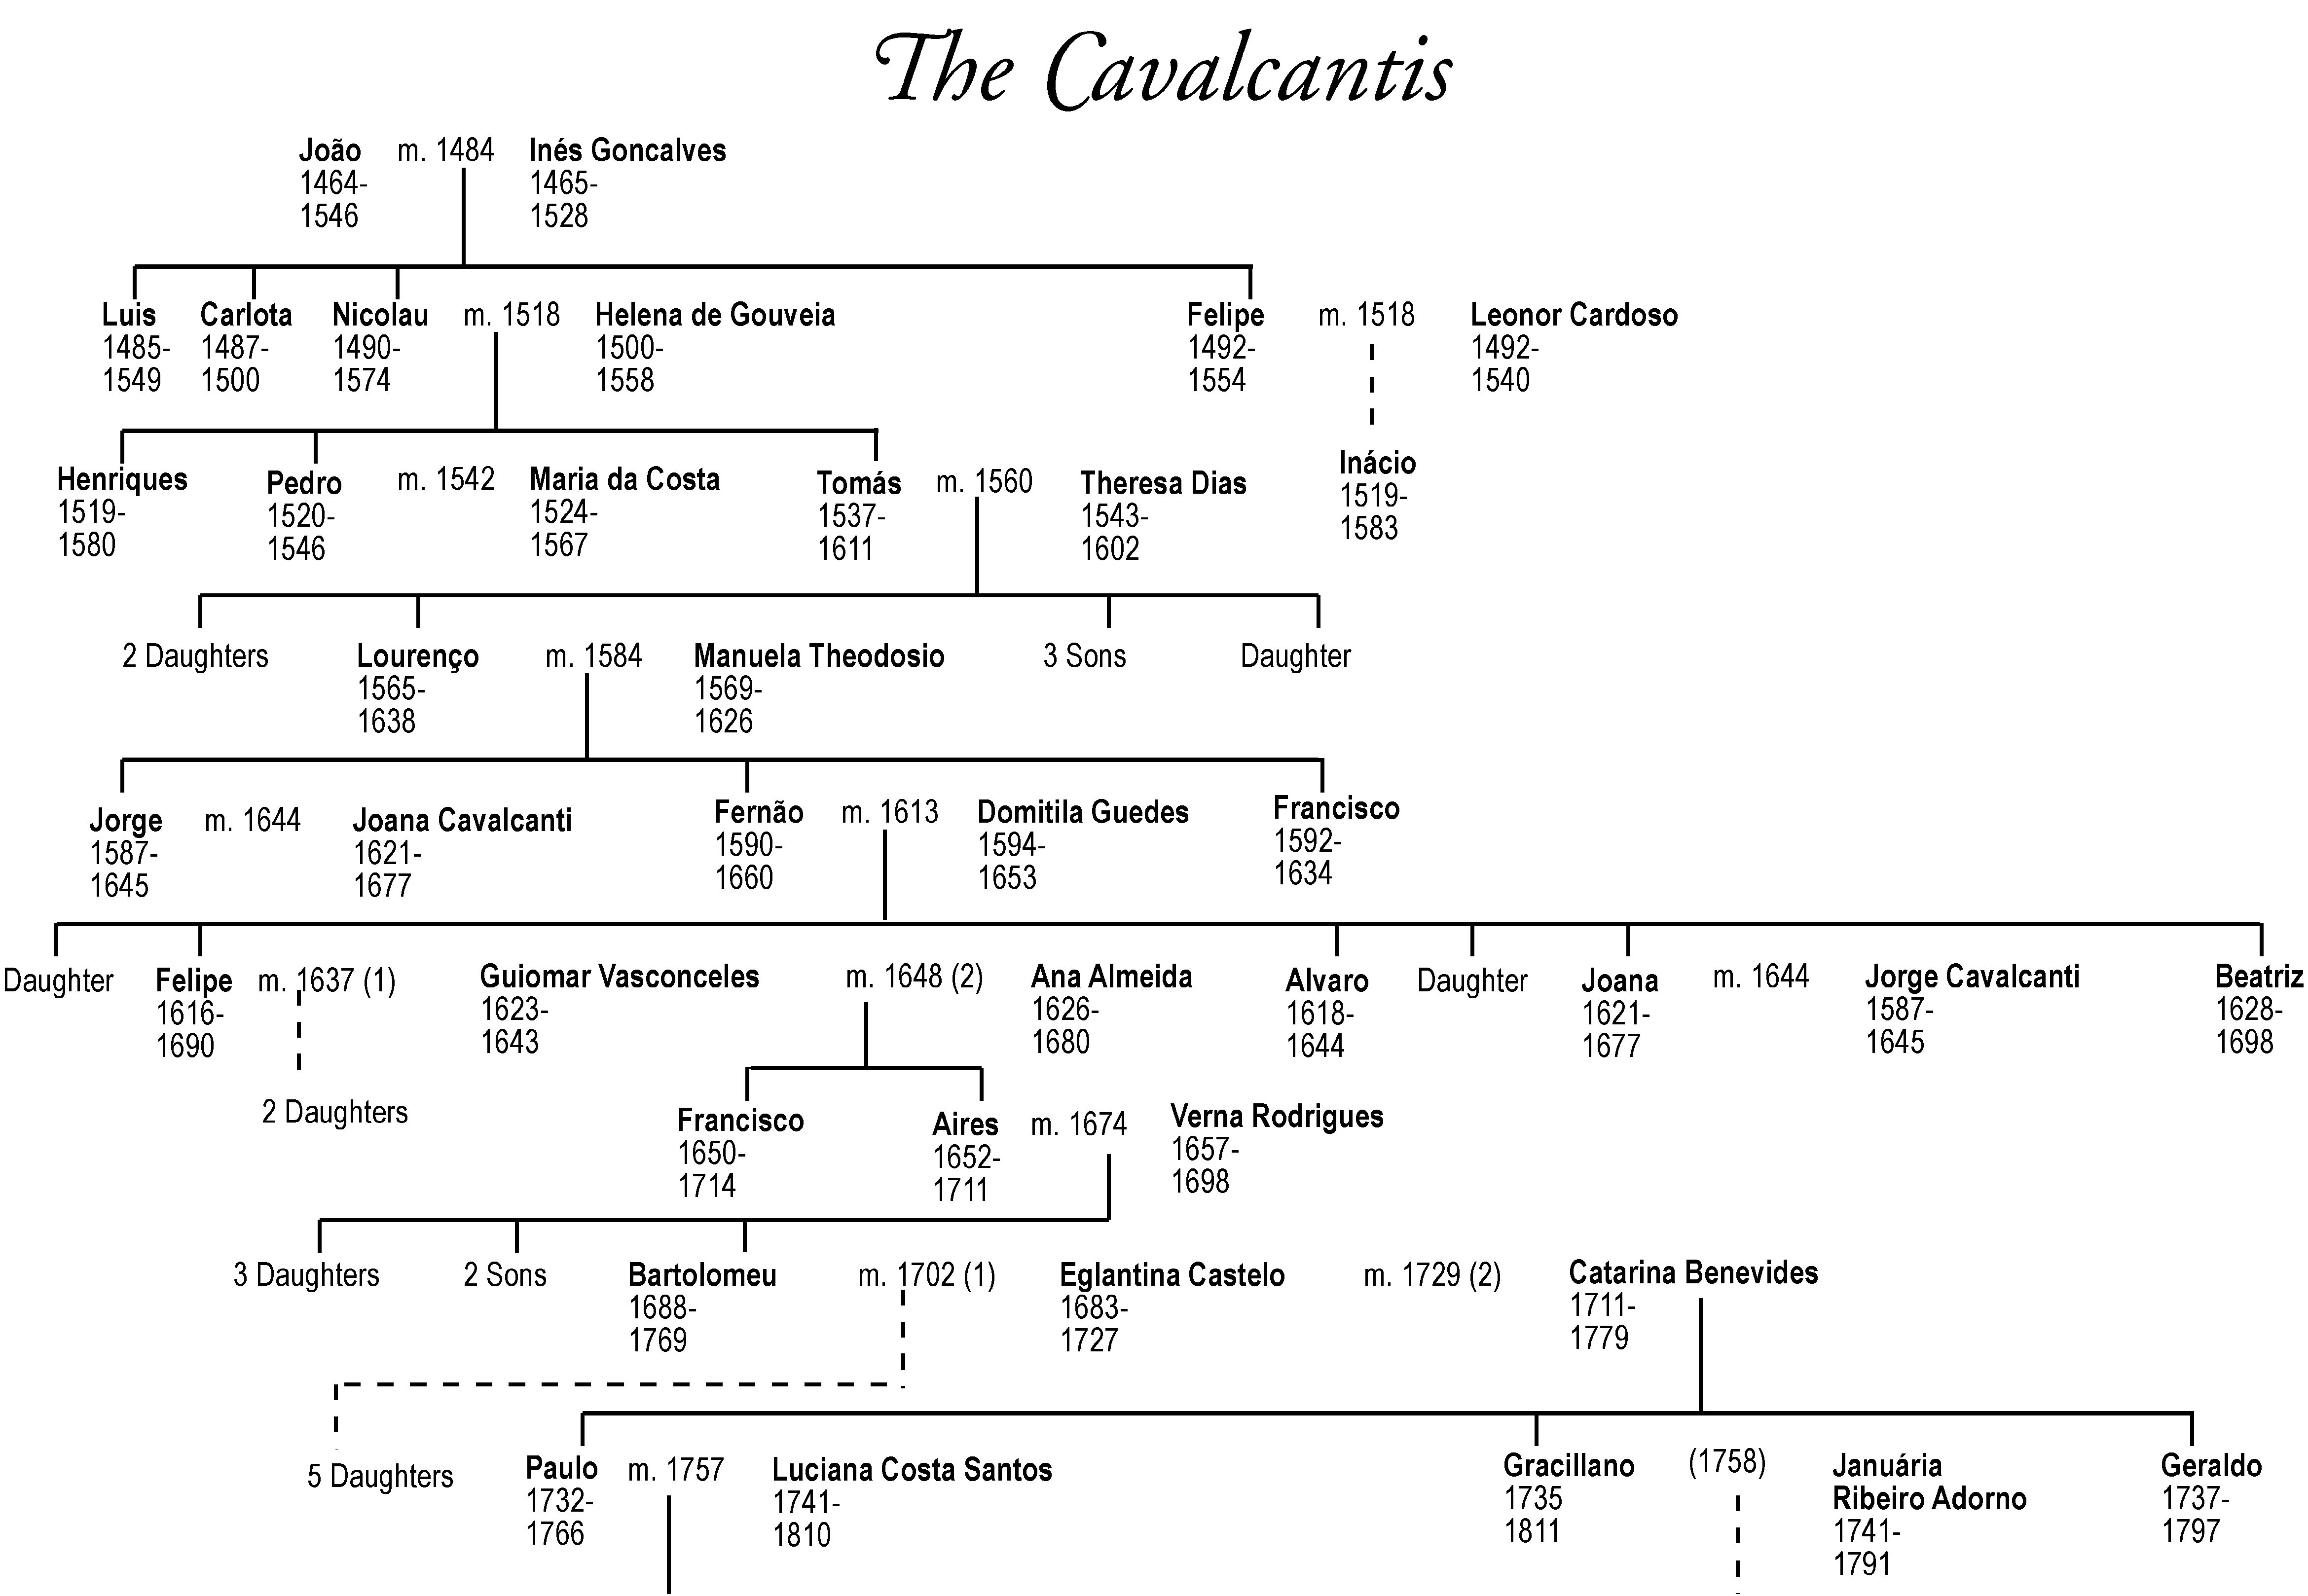 Cavalcanti family tree 1 - from 